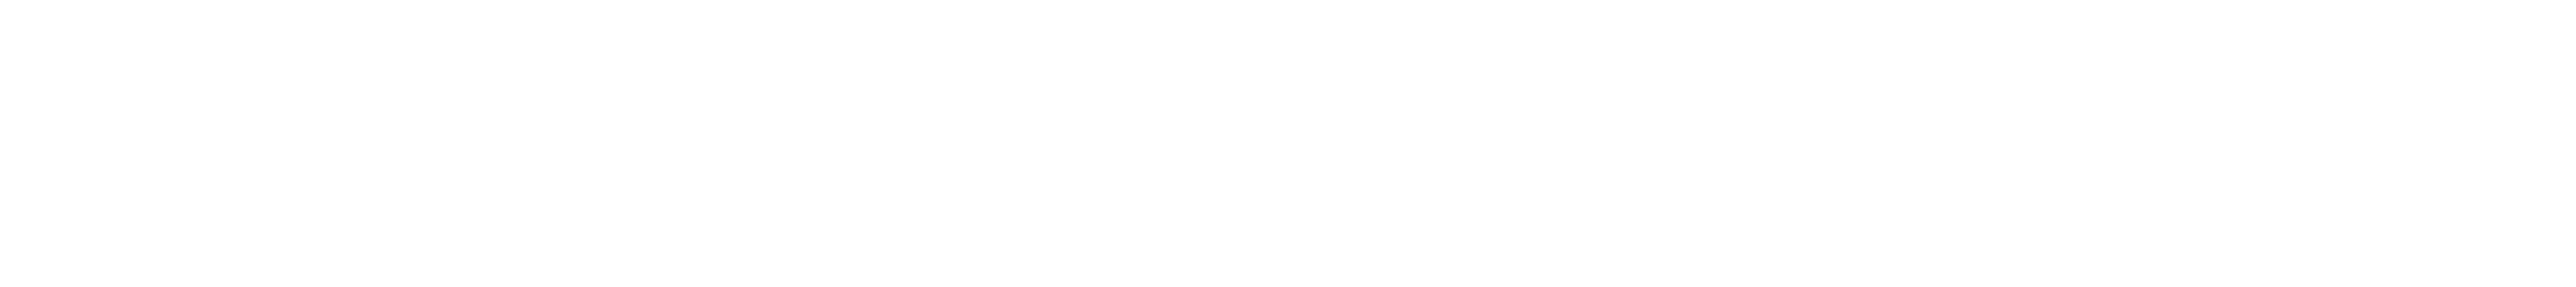 National HR Summit AU Logo